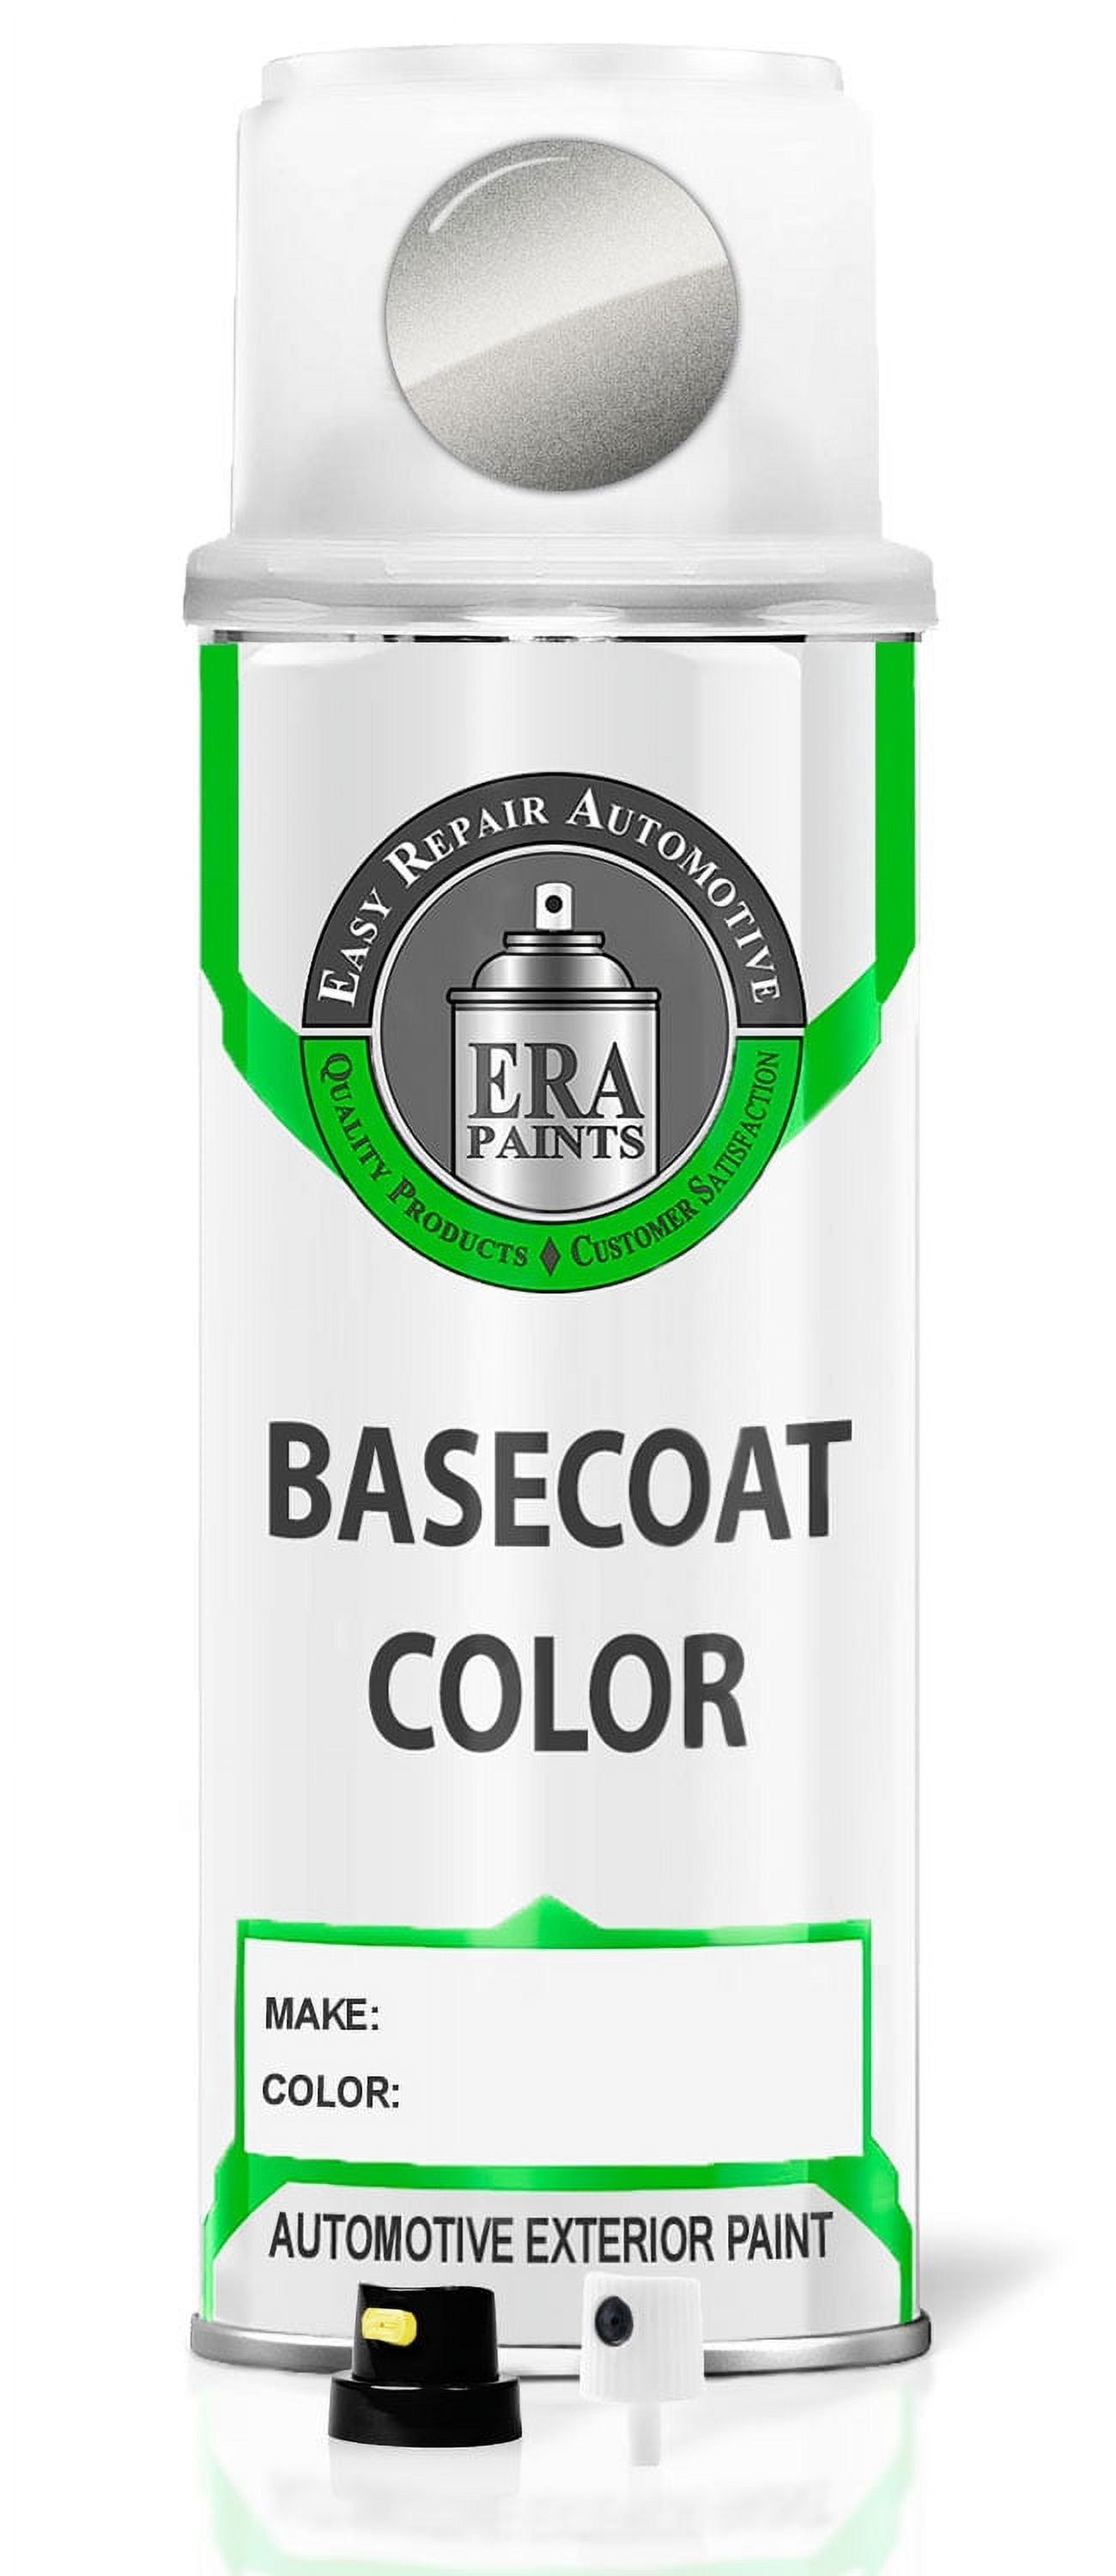 Crop Black Cherry Pearl Aerosol 400ml - Professional Spray